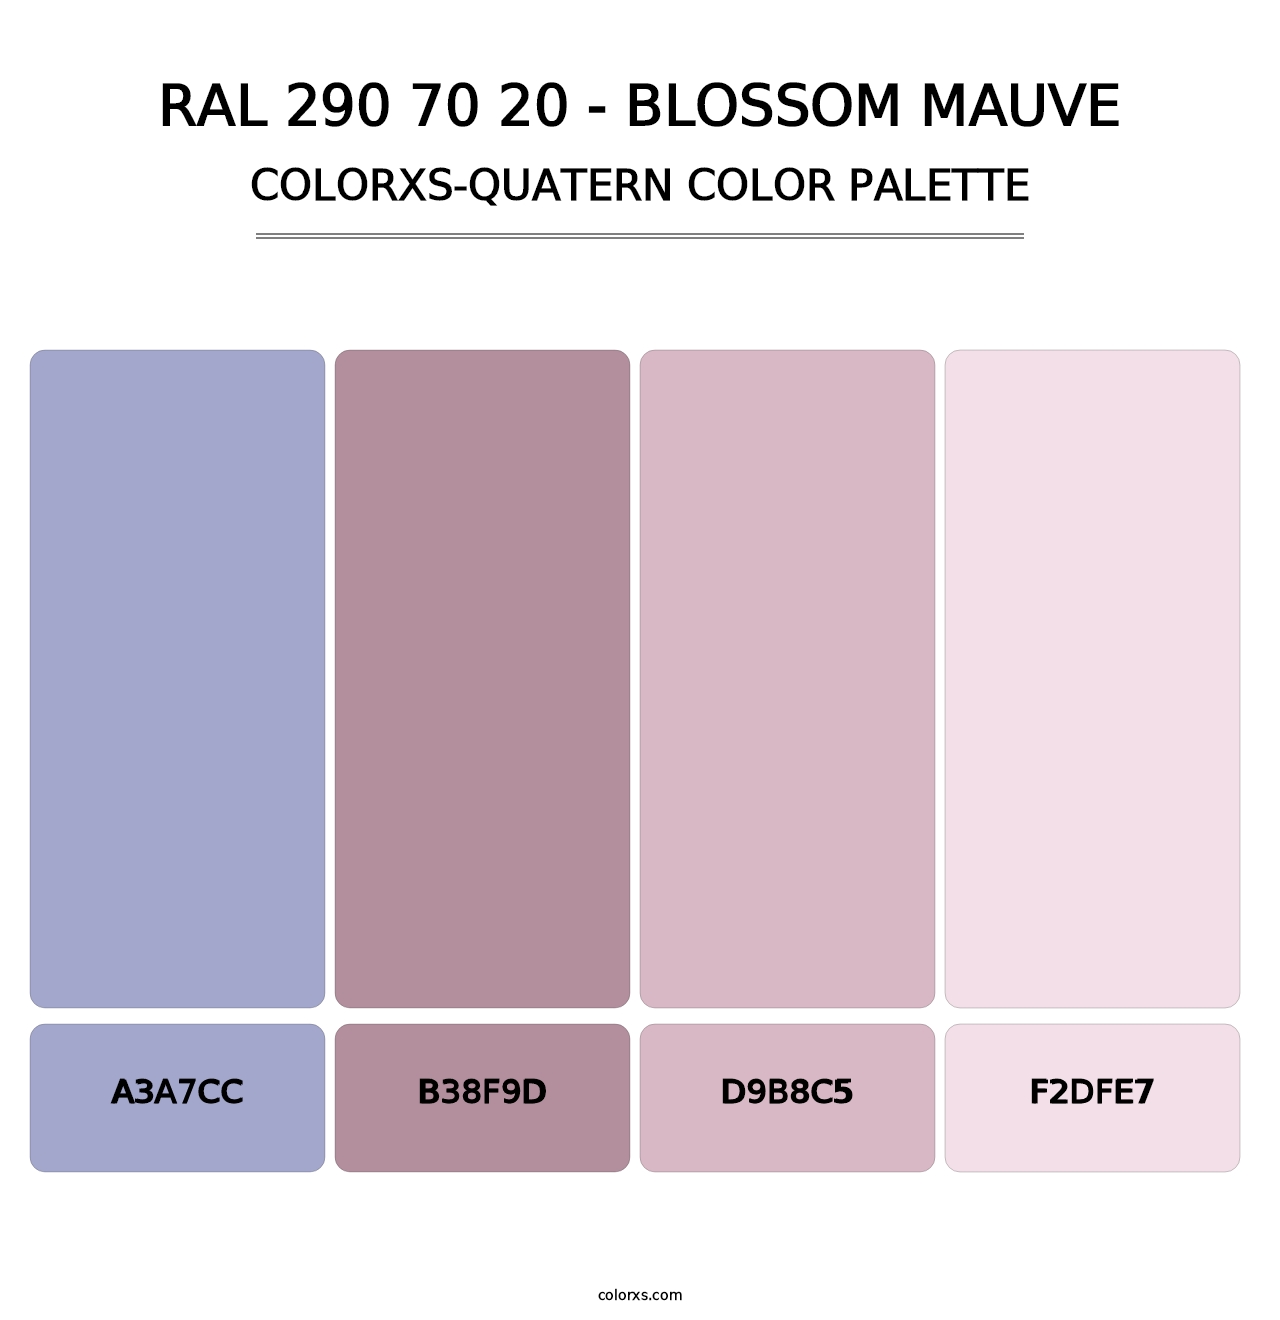 RAL 290 70 20 - Blossom Mauve - Colorxs Quatern Palette